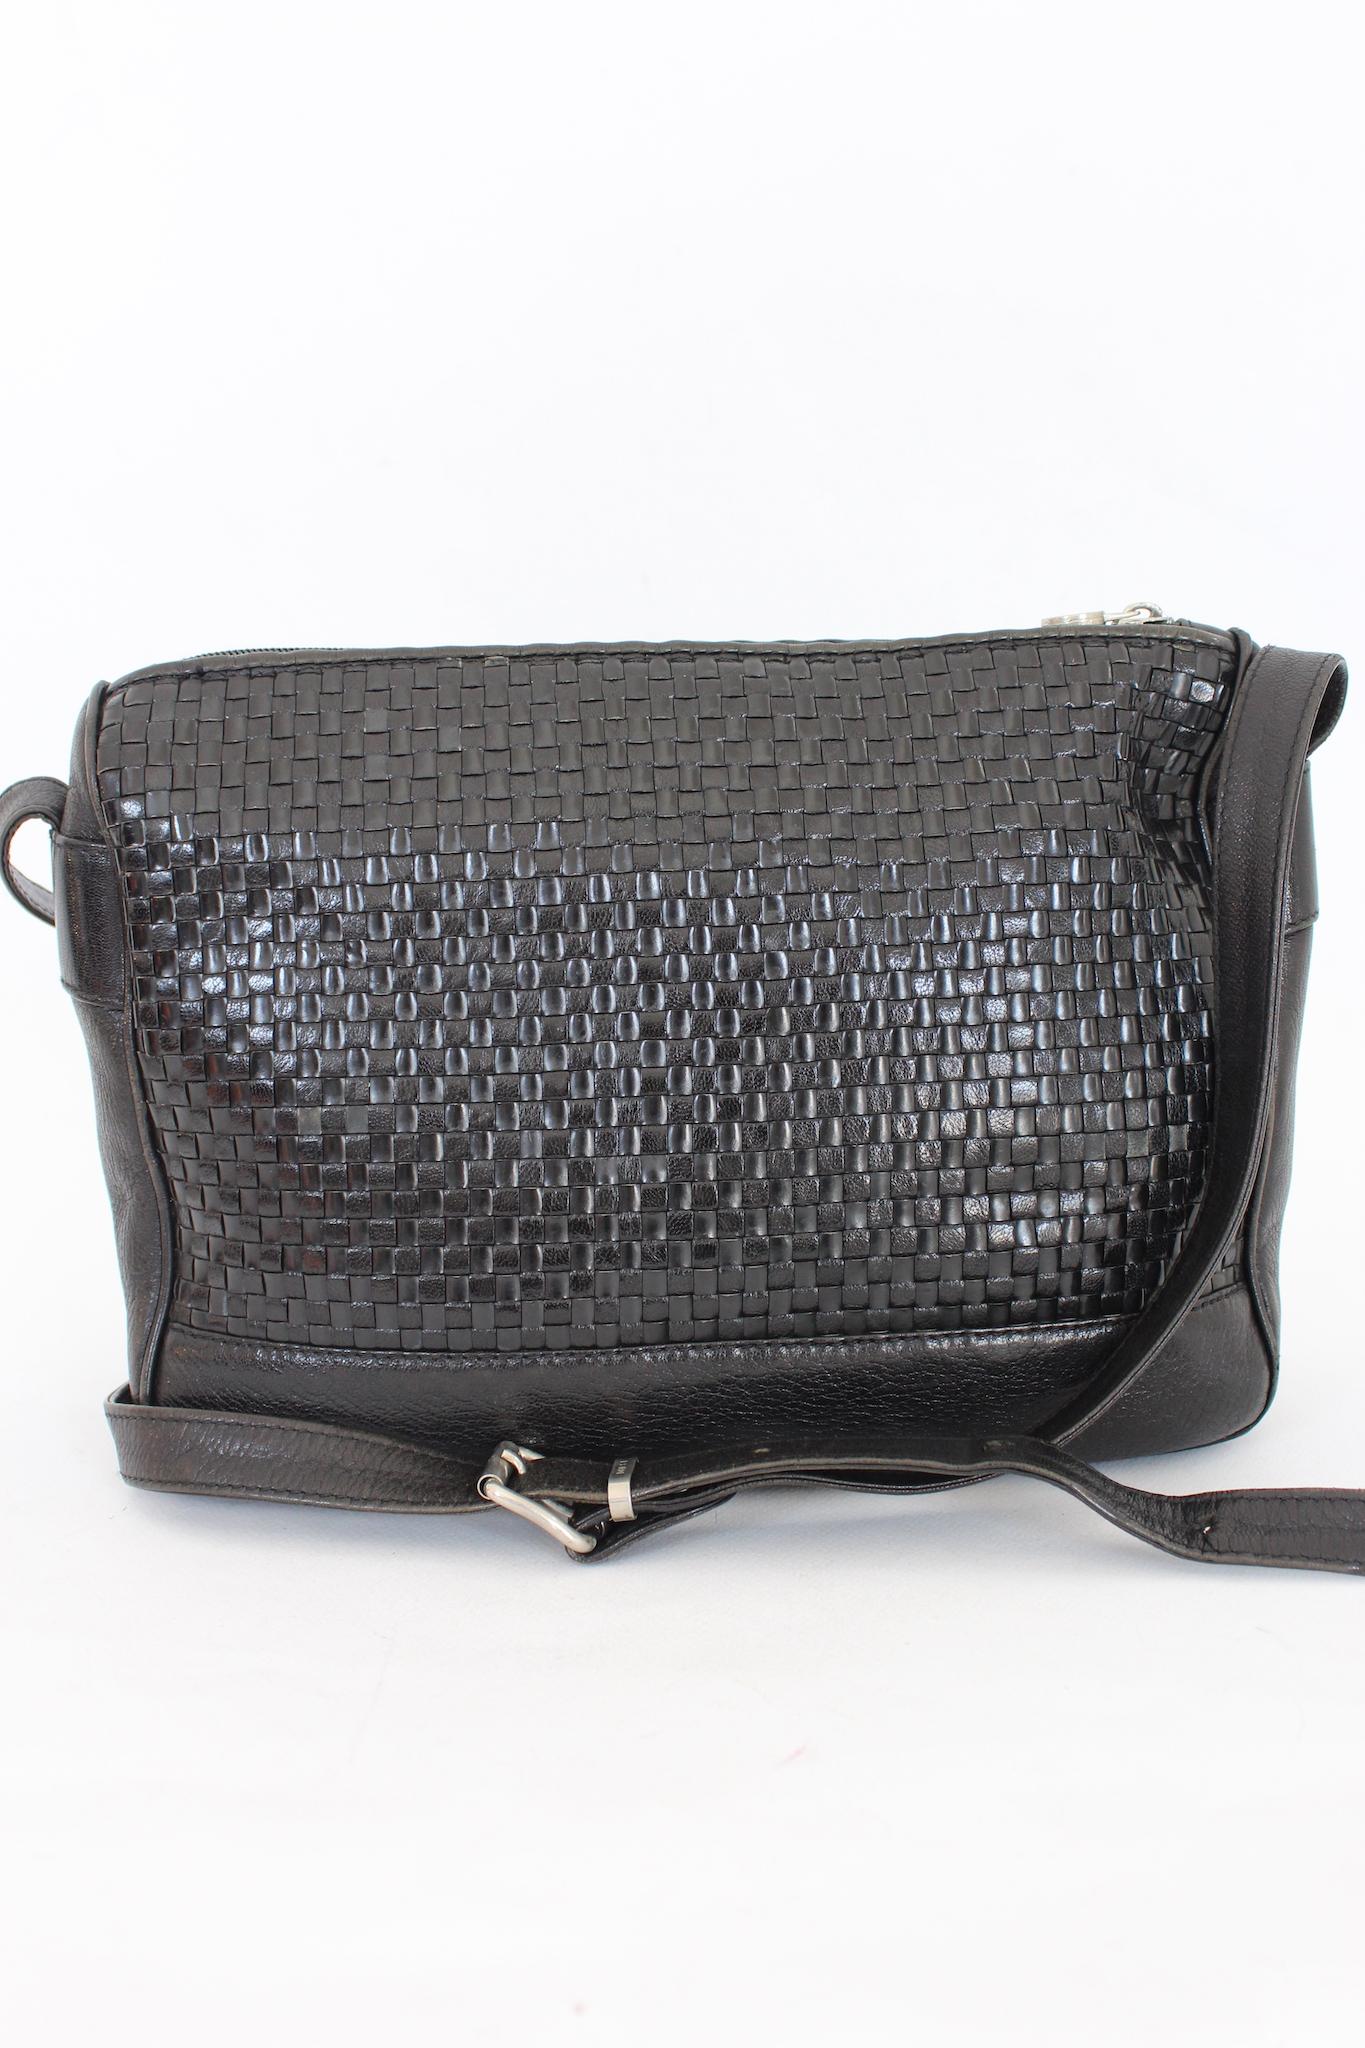 Fendi vintage 80s shoulder bag in woven leather. Black color with silver details. Zip closure, inside zip pocket. Adjustable shoulder strap. Made in Italy.

Height: 22 cm
Width: 30 cm
Depth: 50 cm